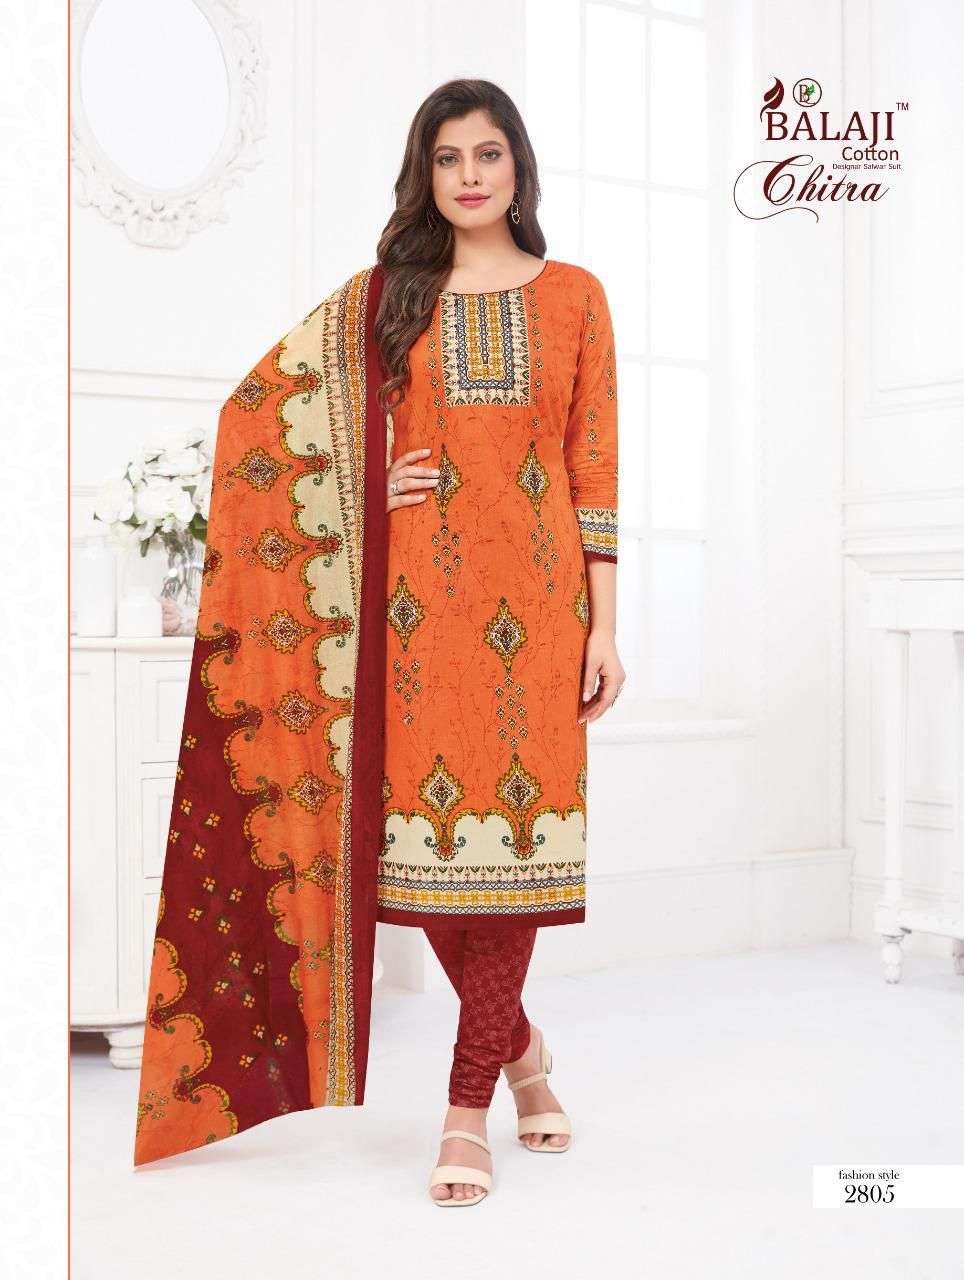 balaji cotton chitra vol-8 2801-2812 series cotton unstich drees material wholesale price 